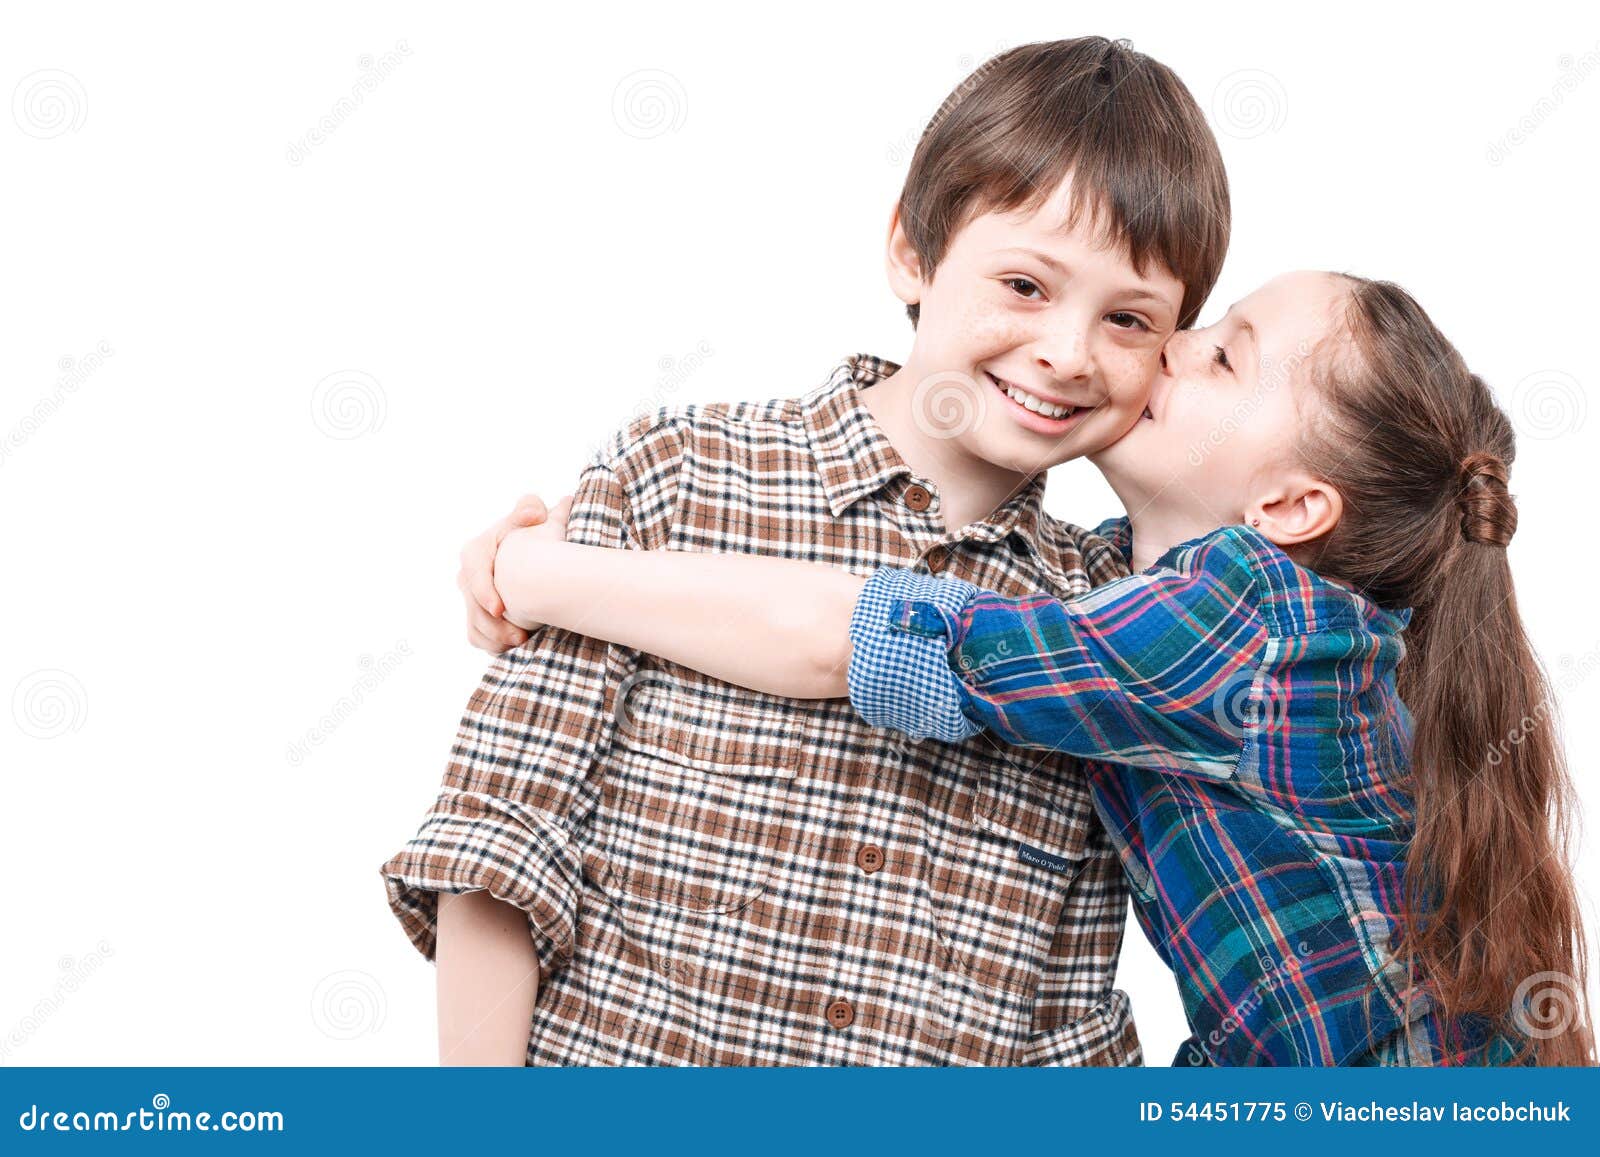 吻小男孩面颊的小女生47697_儿童专辑_人物类_图库壁纸_68Design